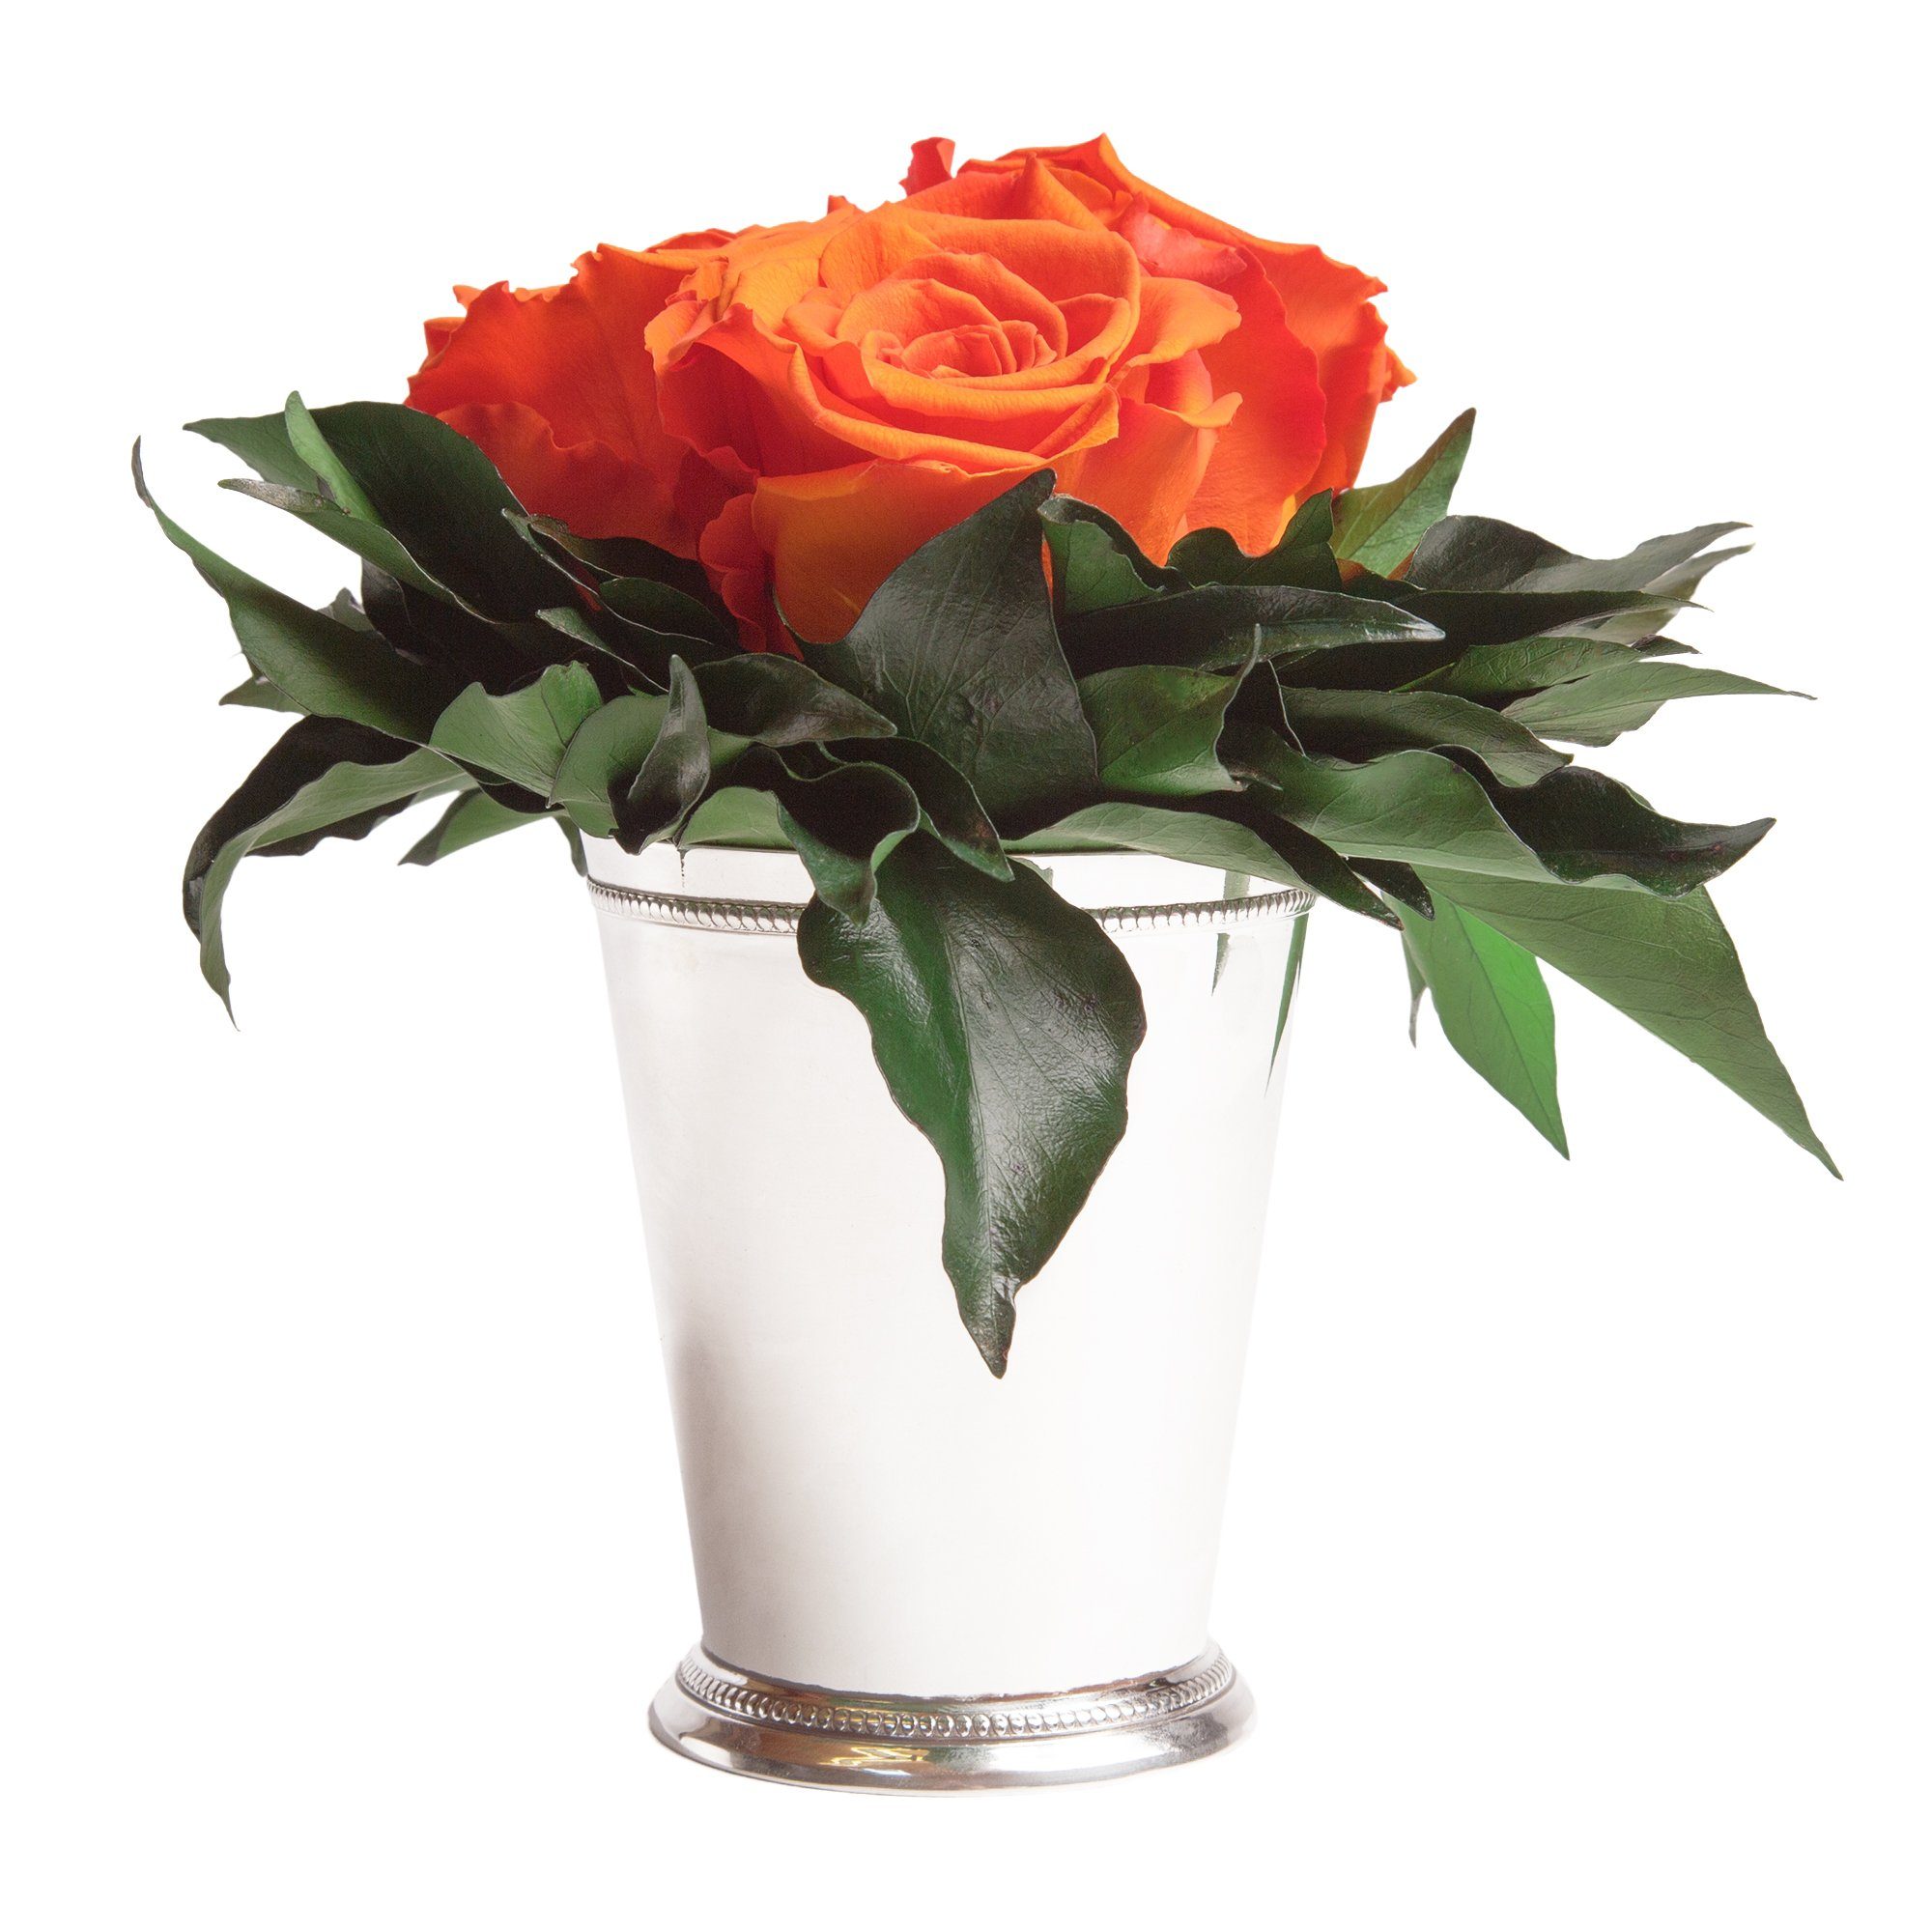 Kunstorchidee 3 Infinity Rosen silberfarbene Vase Wohnzimmer Deko Blumenstrauß Rose, ROSEMARIE SCHULZ Heidelberg, Höhe 15 cm, Rose haltbar bis zu 3 Jahre Orange